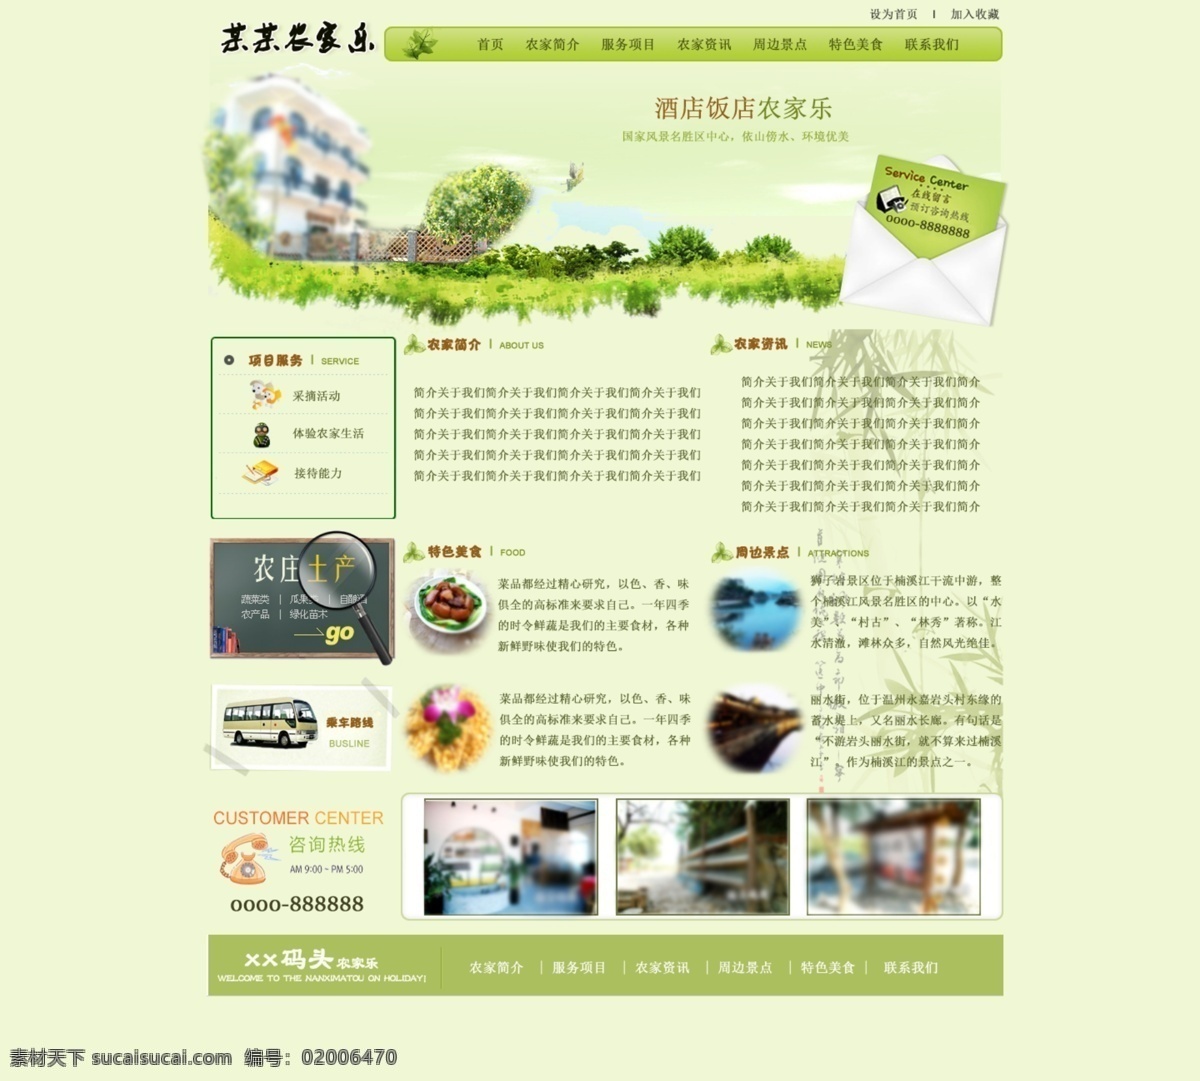 茶叶 酒店 农家乐 网站 淡雅 中国 风 文化 网页设计 网页设计模板 茶 复古元素材 古典元素图片 网站模板 网页模板 茶叶网站 绿色网站